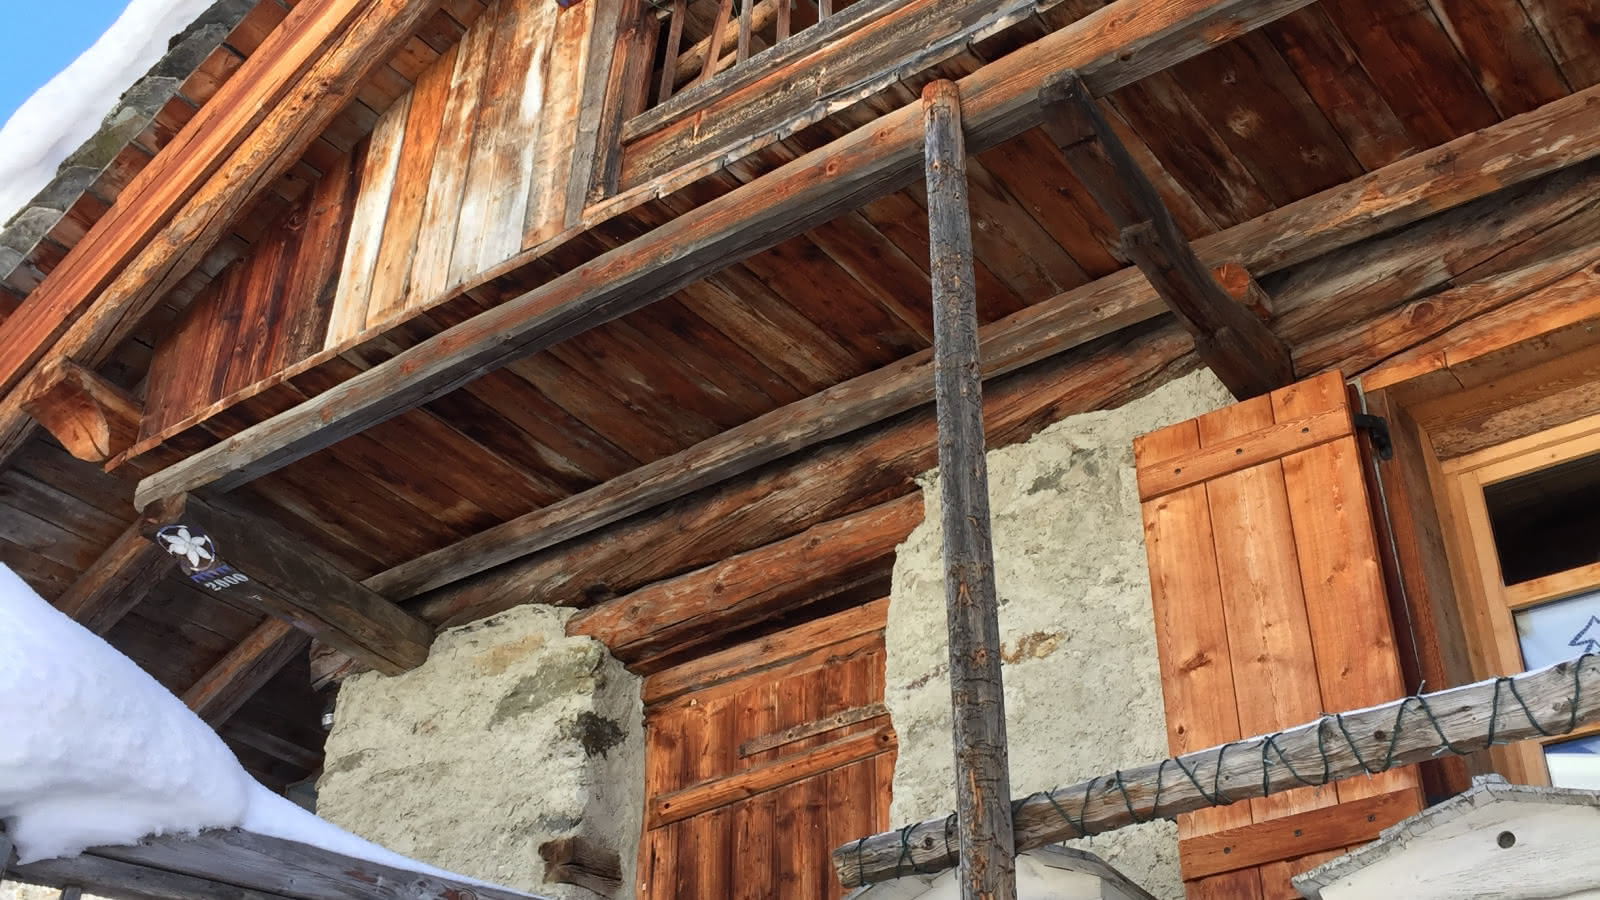 Chalet en bois et pierres du pays : architecture traditionnelle de Sainte Foy Tarentaise